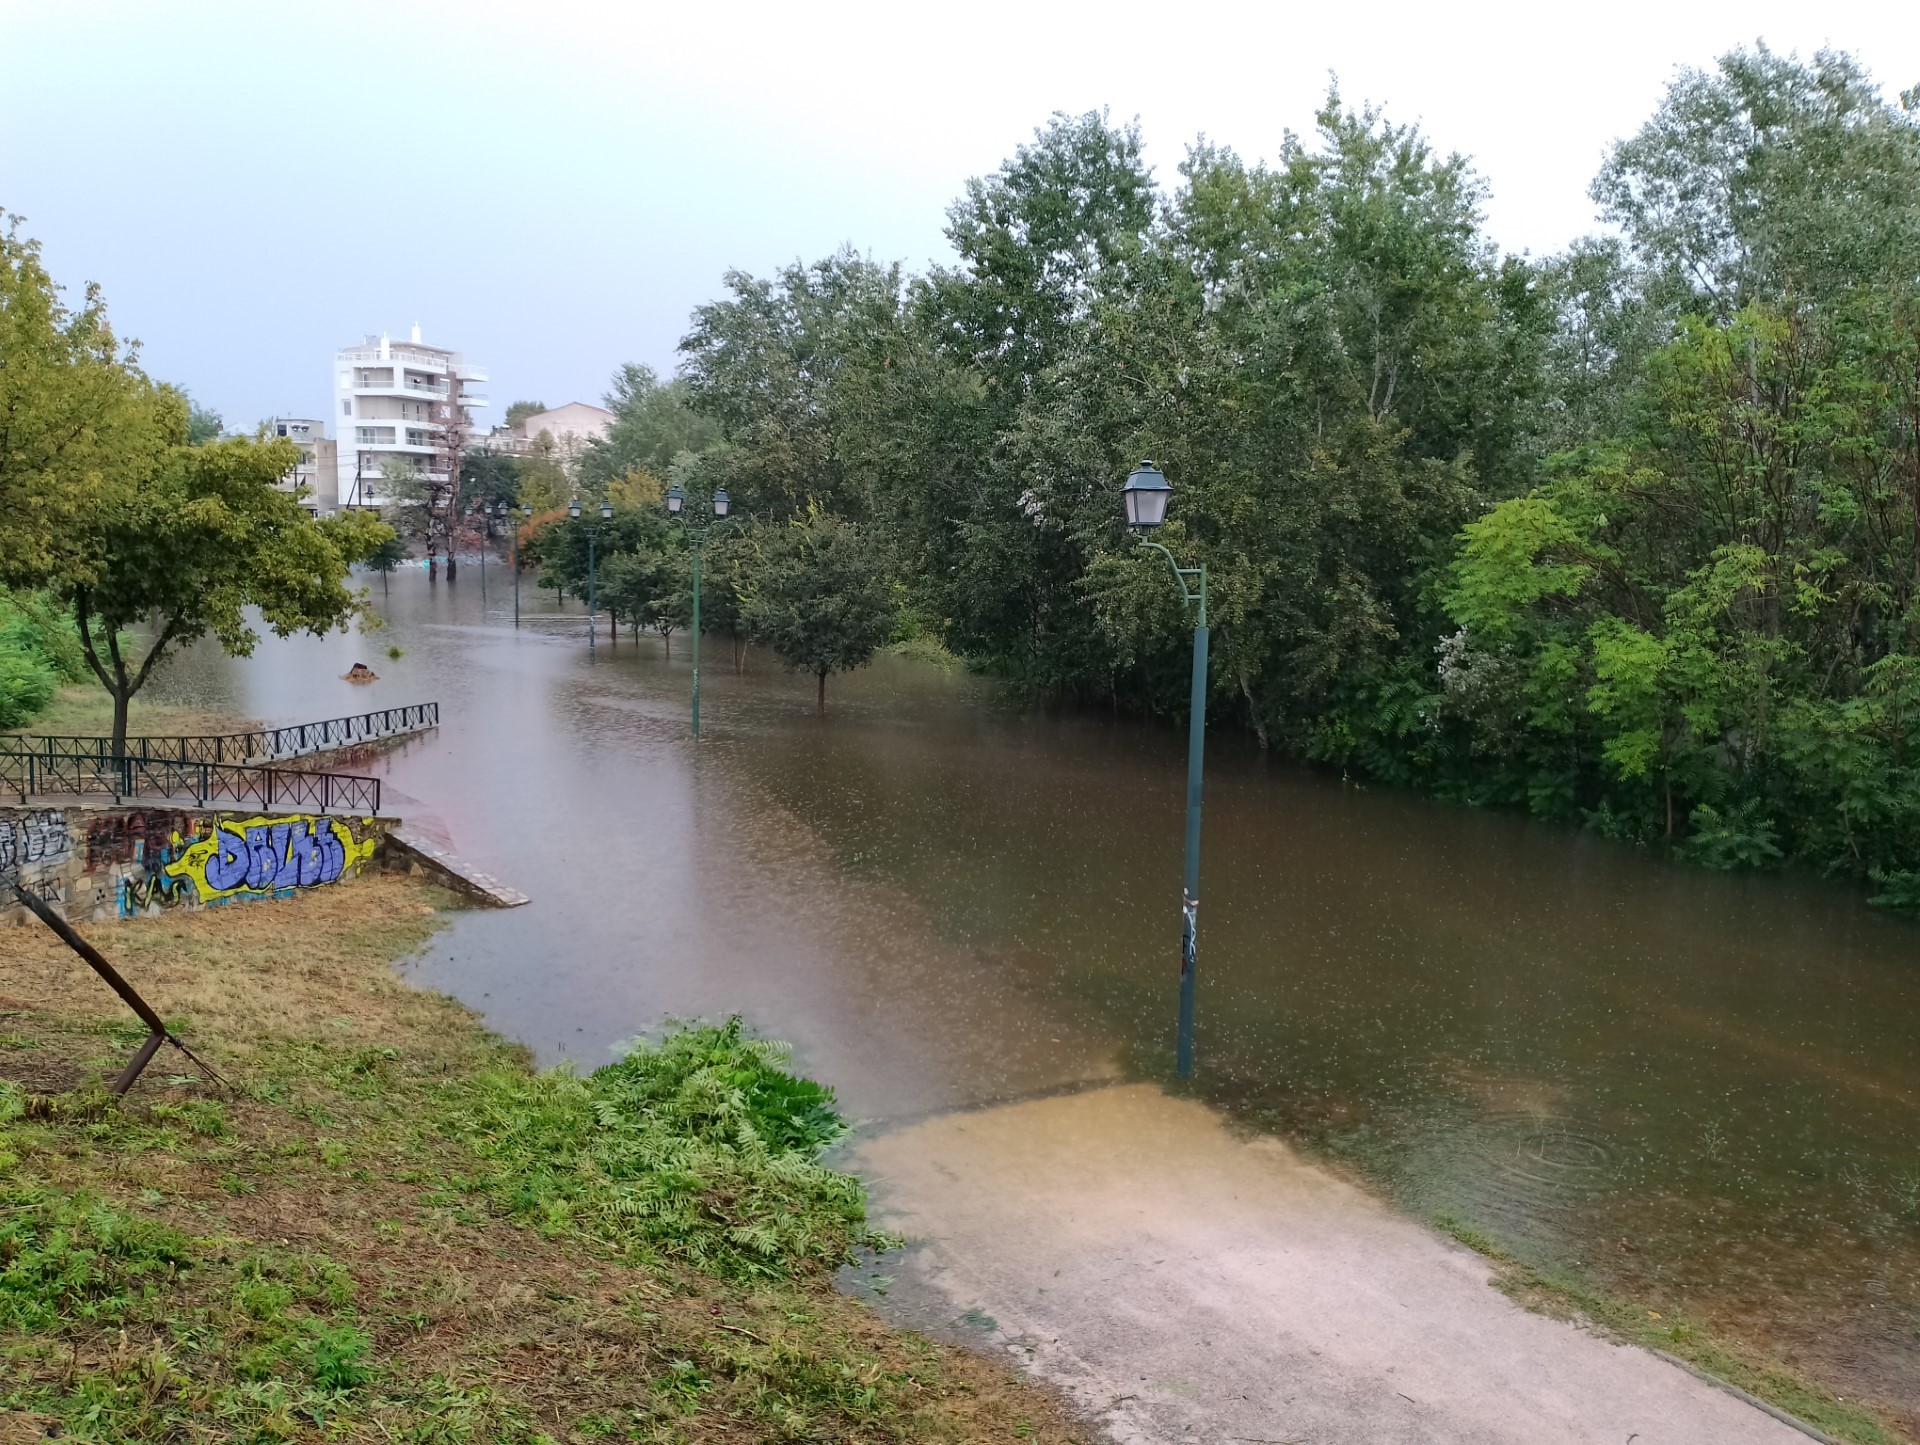 Tη διαφύλαξη της πλημμυρικής ζώνης ζητούν πανεπιστημιακοί